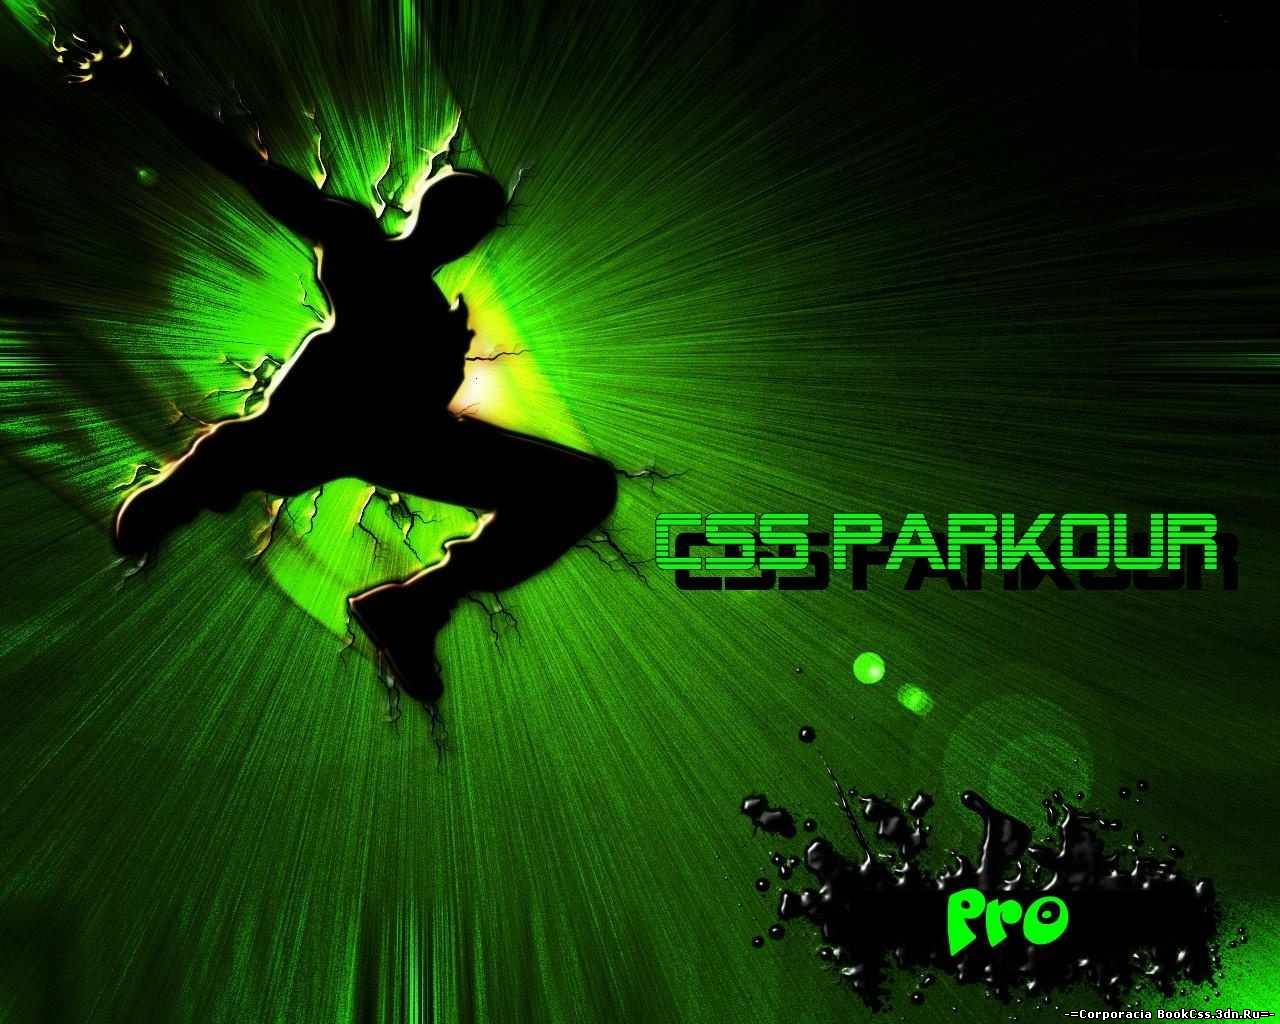 CSS Parkour